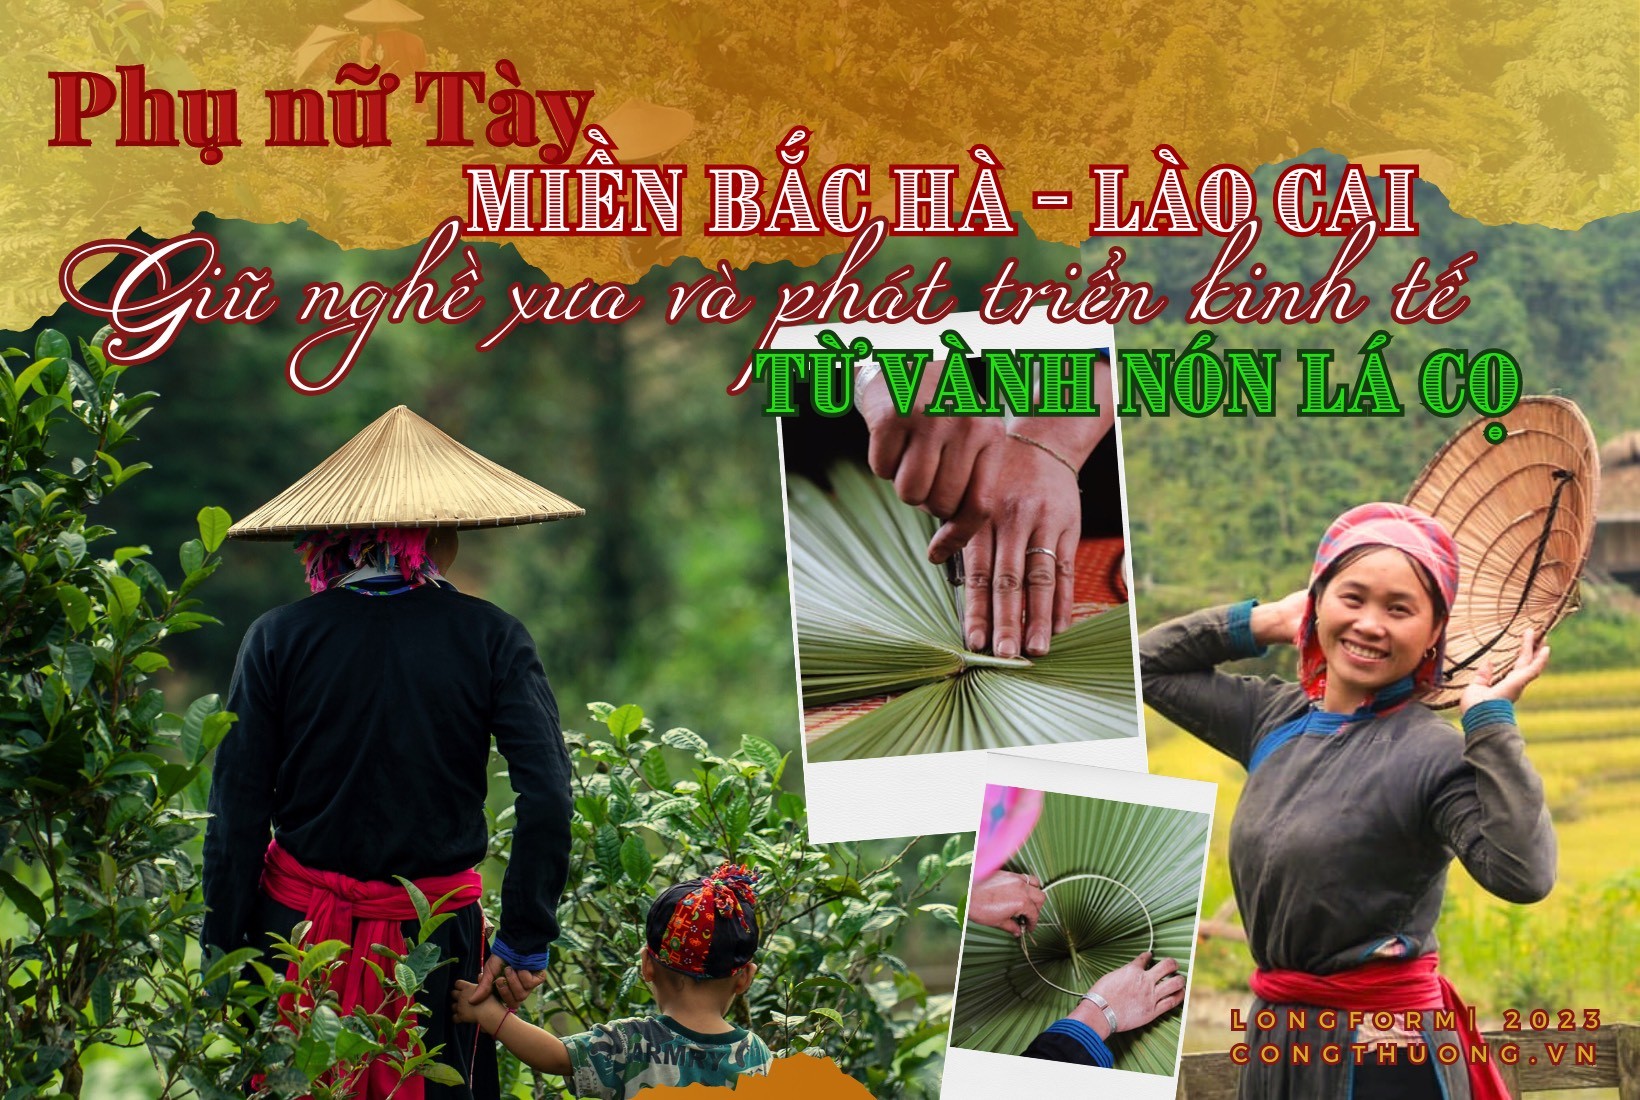 Longform | Phụ nữ Tày miền Bắc Hà- Lào Cai: Giữ nghề xưa, phát triển kinh tế từ vành nón lá cọ